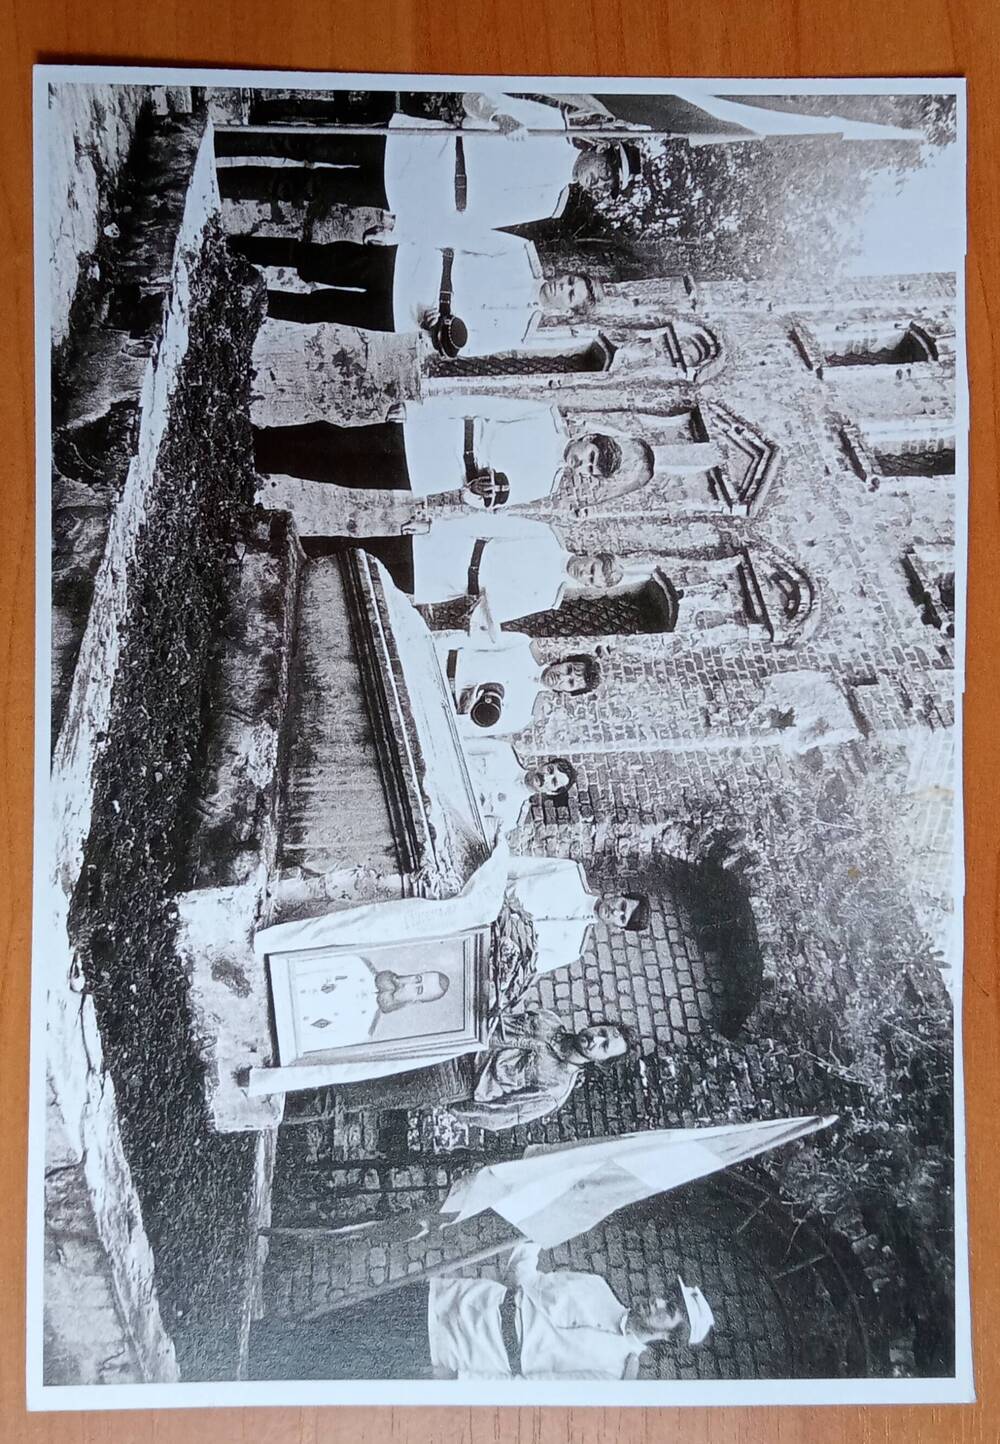 Фотография «Гражданская панихида на могиле М.Д. Скобелева 18 июня 1990 г.», Ф. Титов